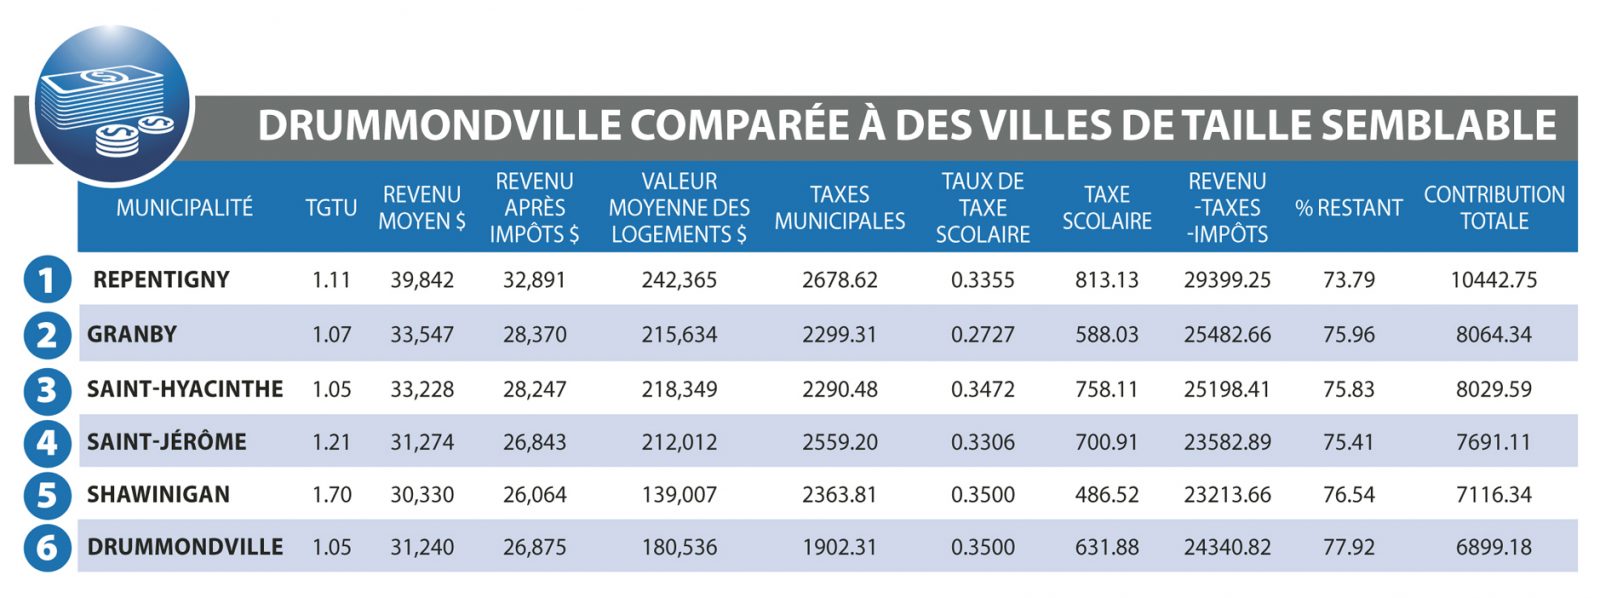 Qui paye le plus de taxes et d’impôts au Québec? *